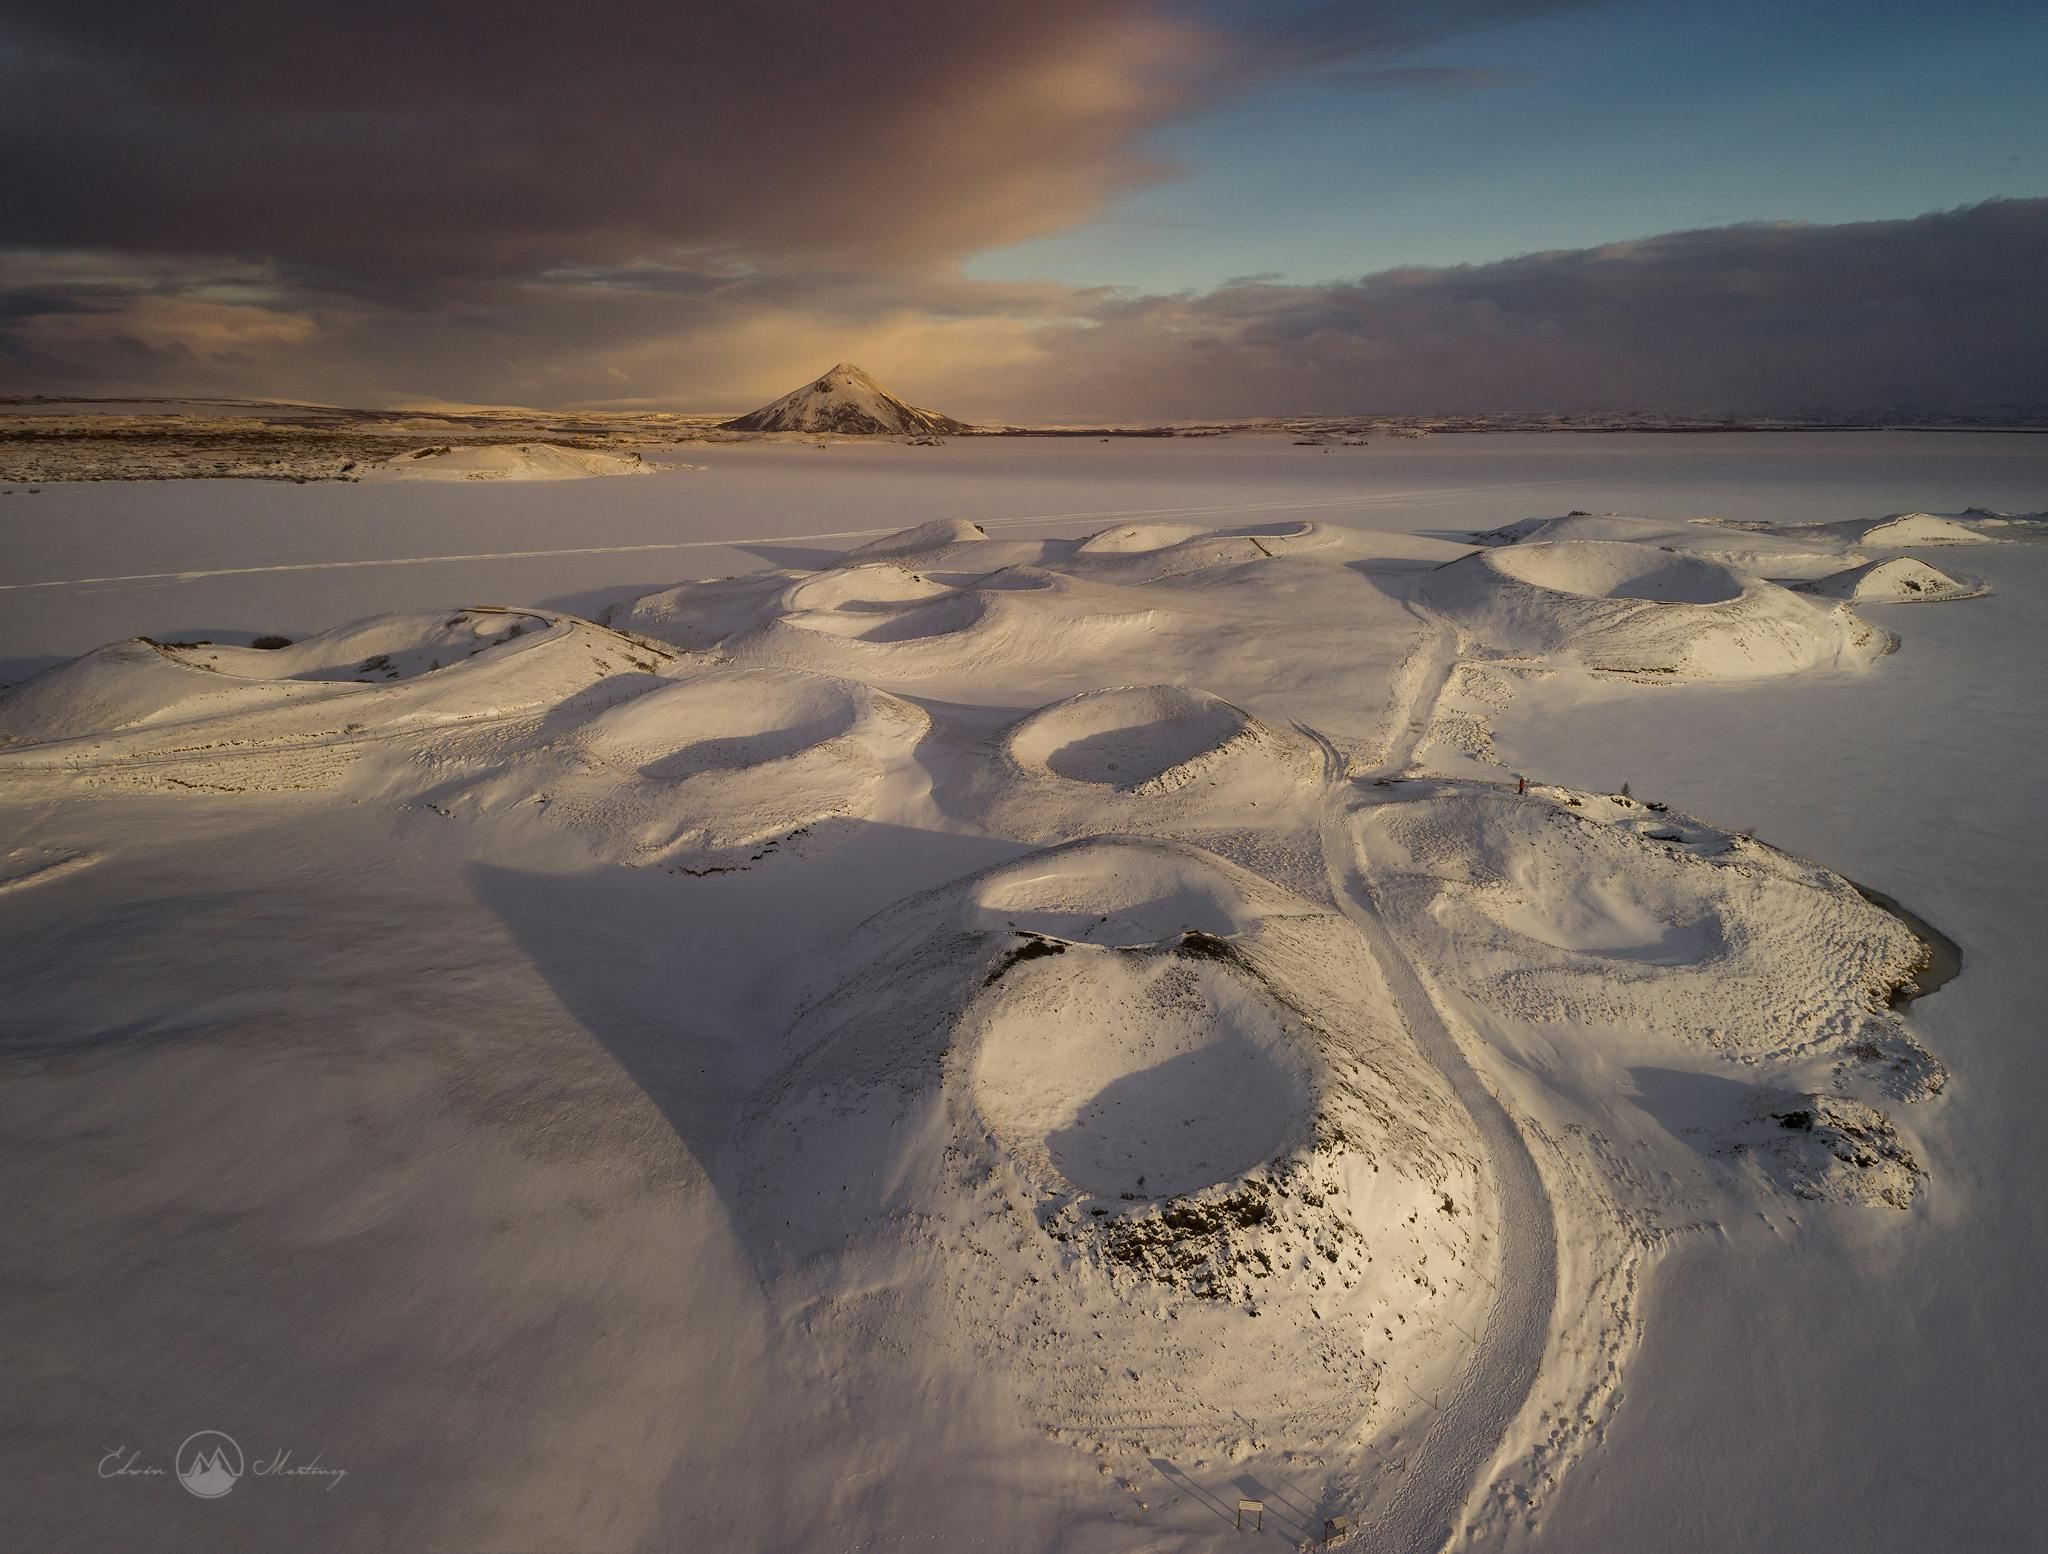 ประเทศไอซ์แลนด์ในช่วงฤดูหนาวถูกปกคลุมด้วยหิมะและน้ำแข็ง ทำให้ที่นี่เป็นสถานที่ที่เหมาะกับการถ่ายภาพสถานที่มาก.